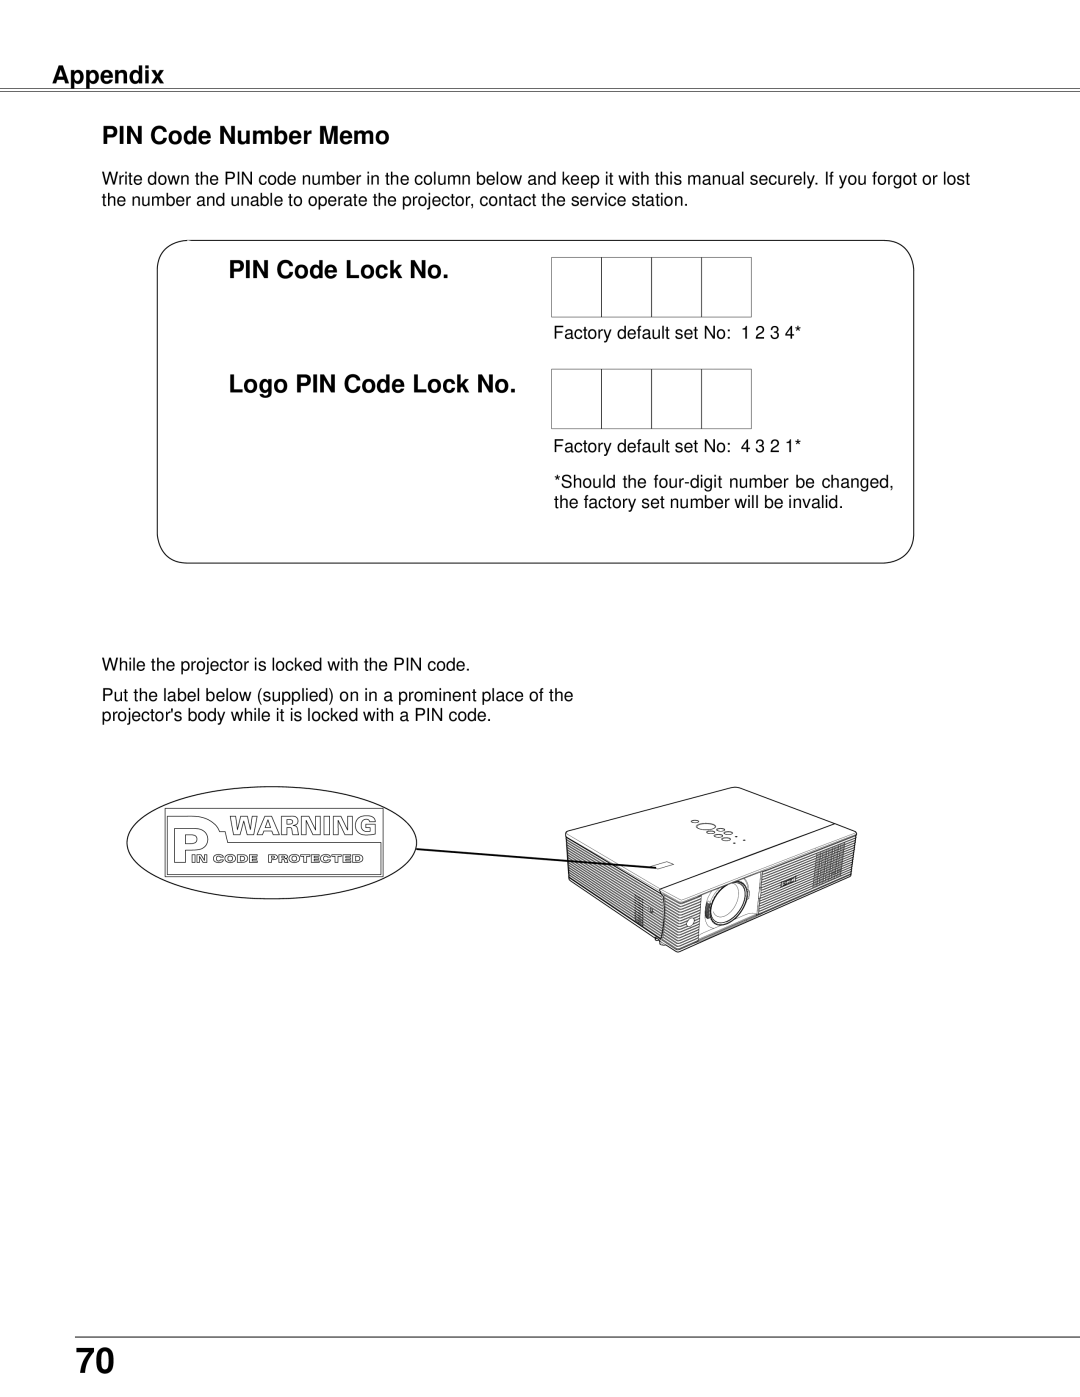 Eiki LC-XB42 owner manual Appendix PIN Code Number Memo, Logo PIN Code Lock No 